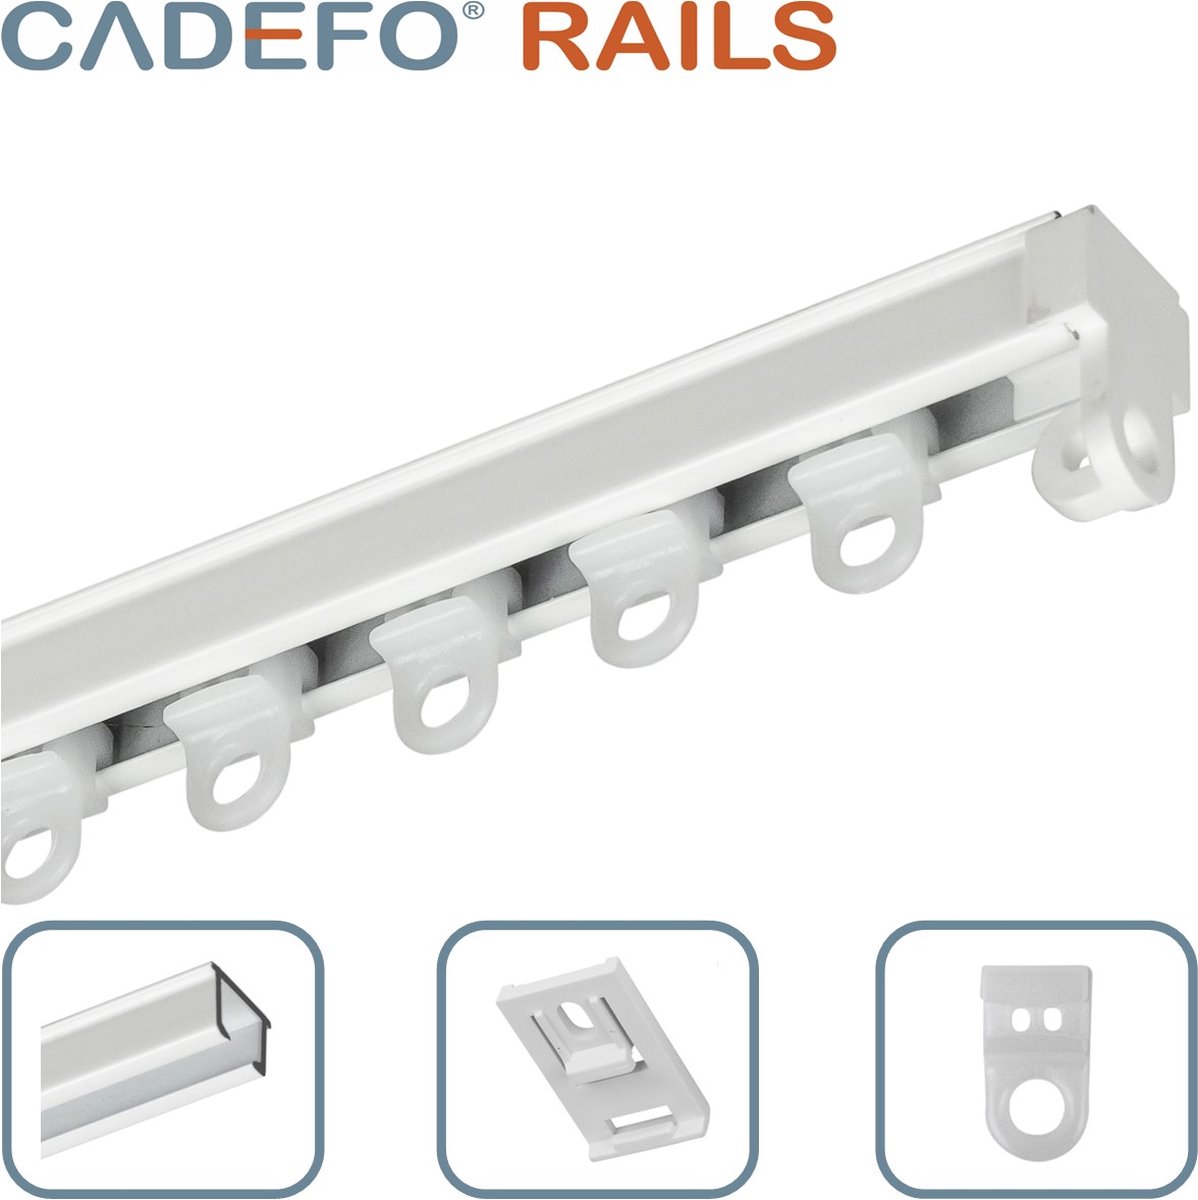 CADEFO RAILS (451 - 500 cm) Gordijnrails - Compleet op maat! - UIT 1 STUK - Leverbaar tot 6 meter - Plafondbevestiging - Lengte 459 cm